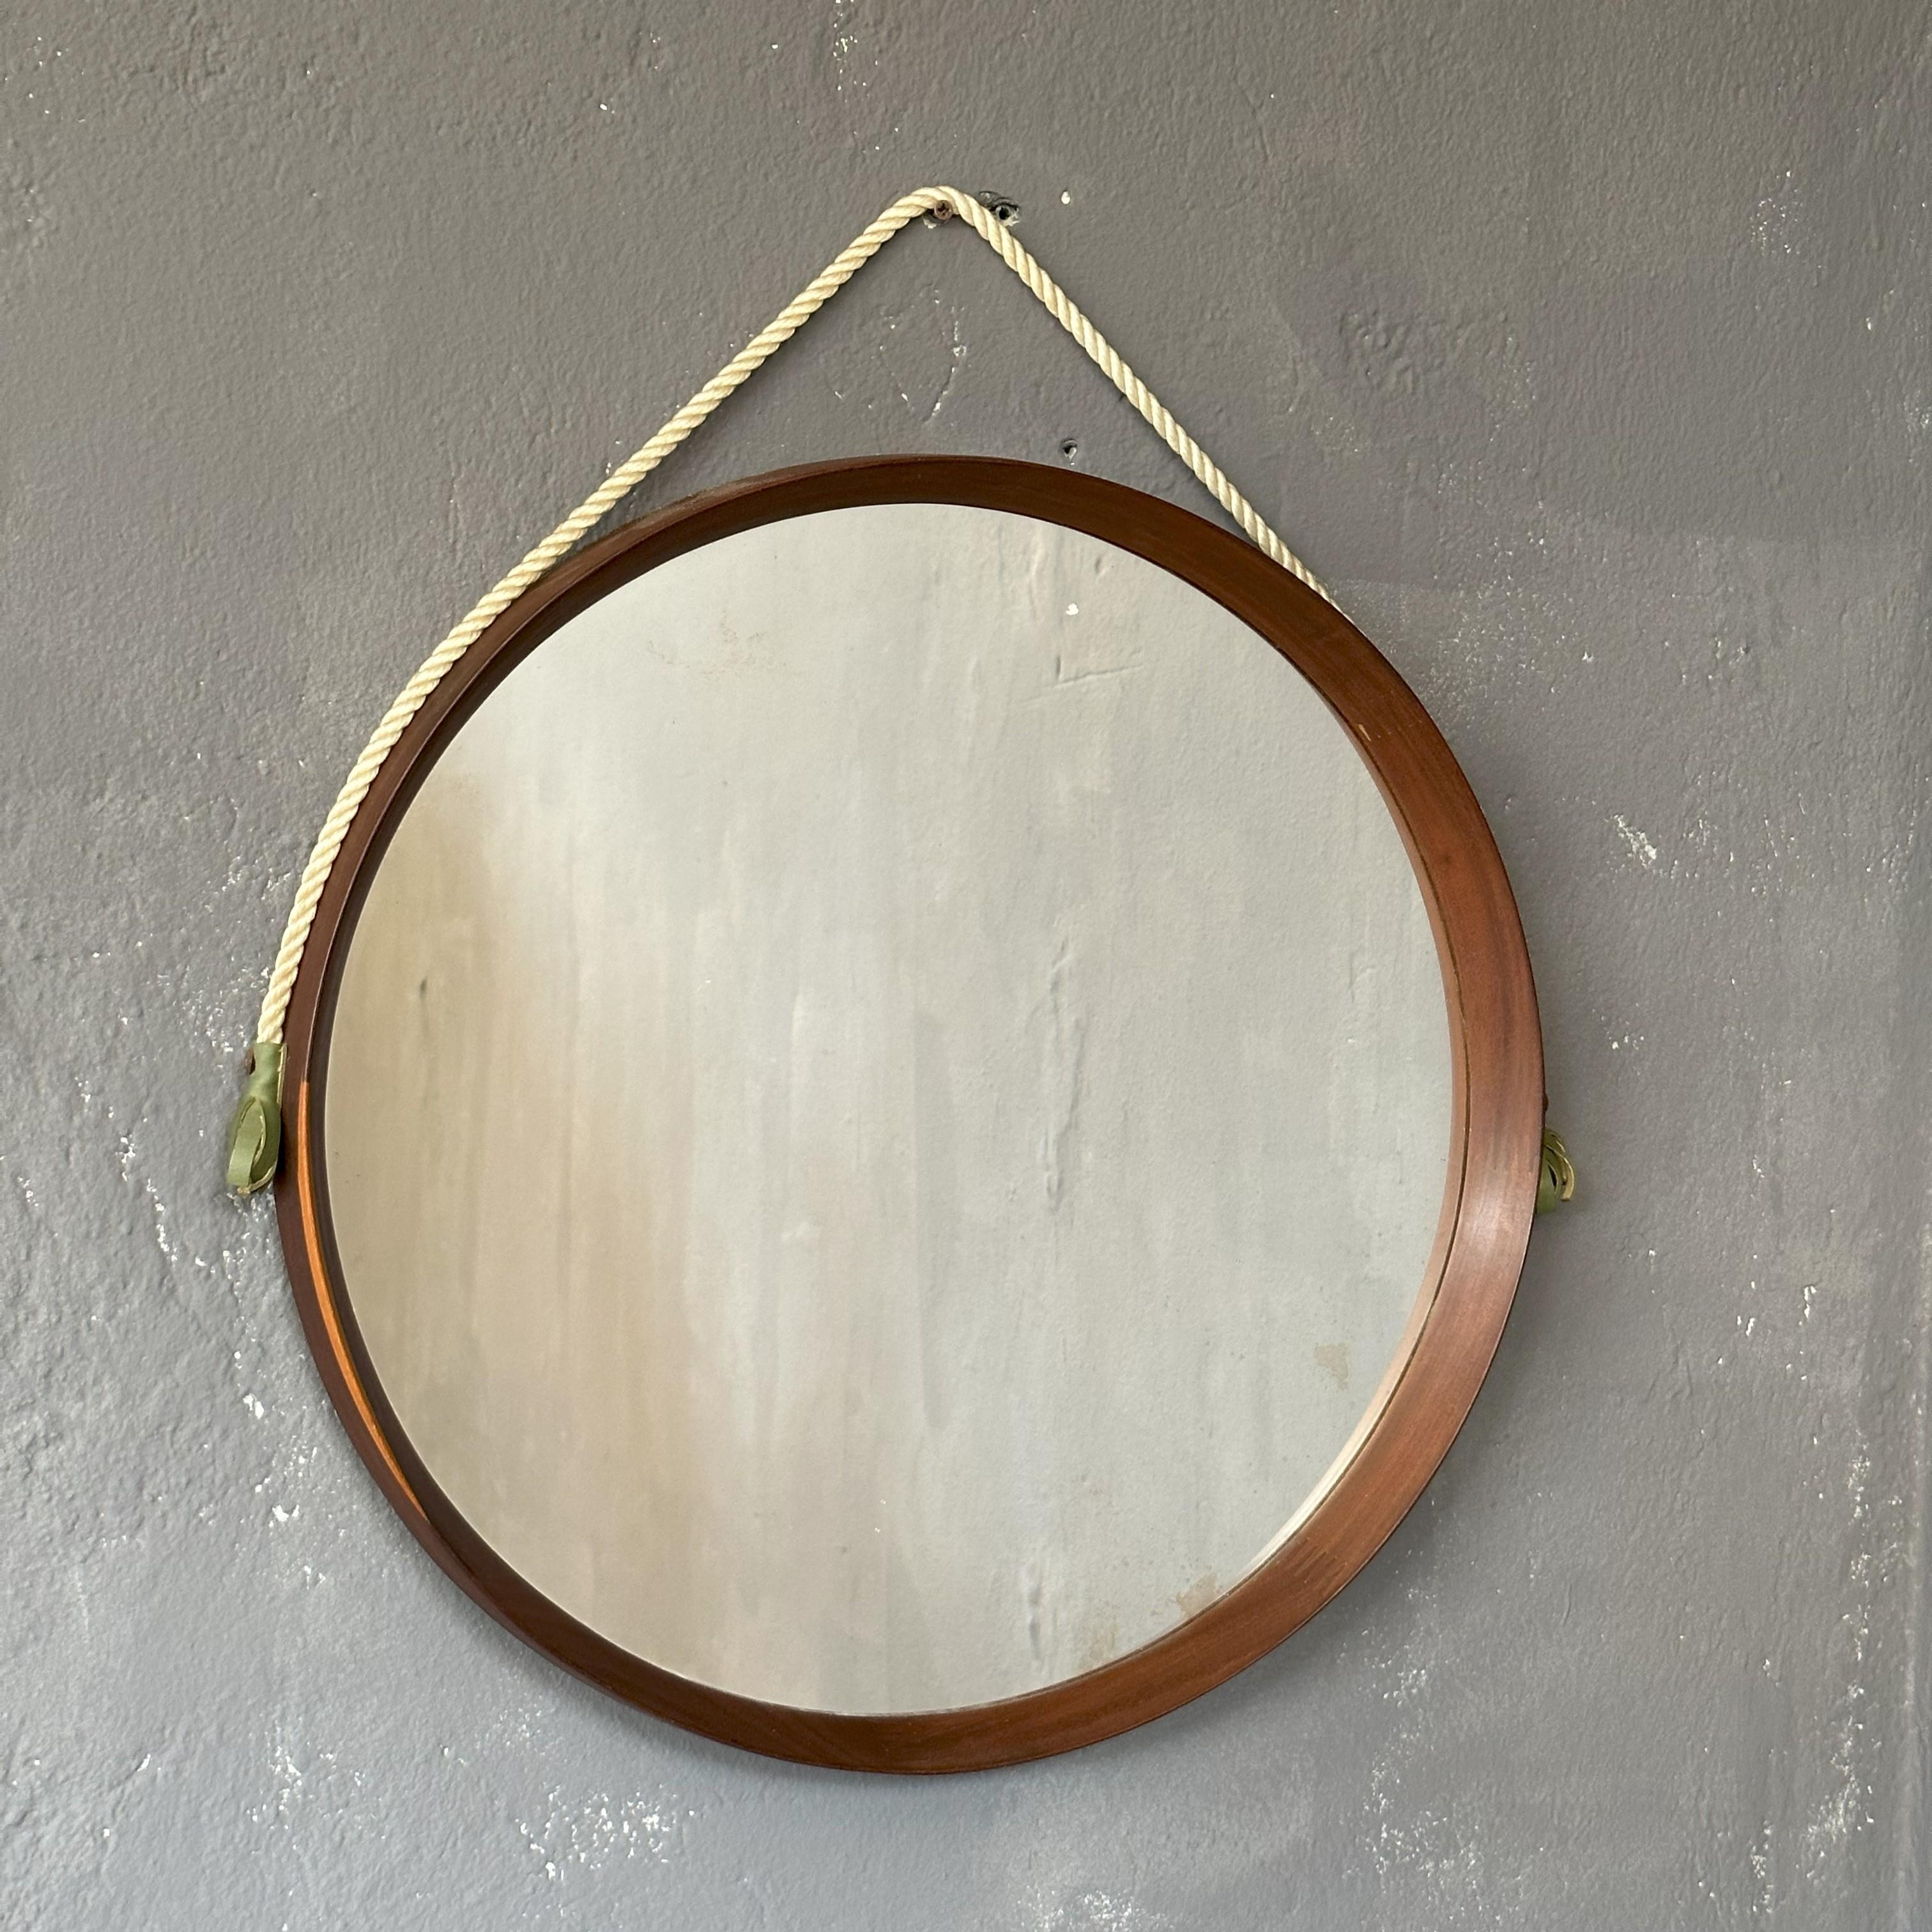 Miroir rond avec cadre en teck, années 1960, fabrication italienne, avec corde de suspension
Le miroir a un diamètre de 51cm, avec la corde il a une hauteur totale de 60cm.
Sur toute la circonférence, un cadre en teck avec de beaux détails en bois